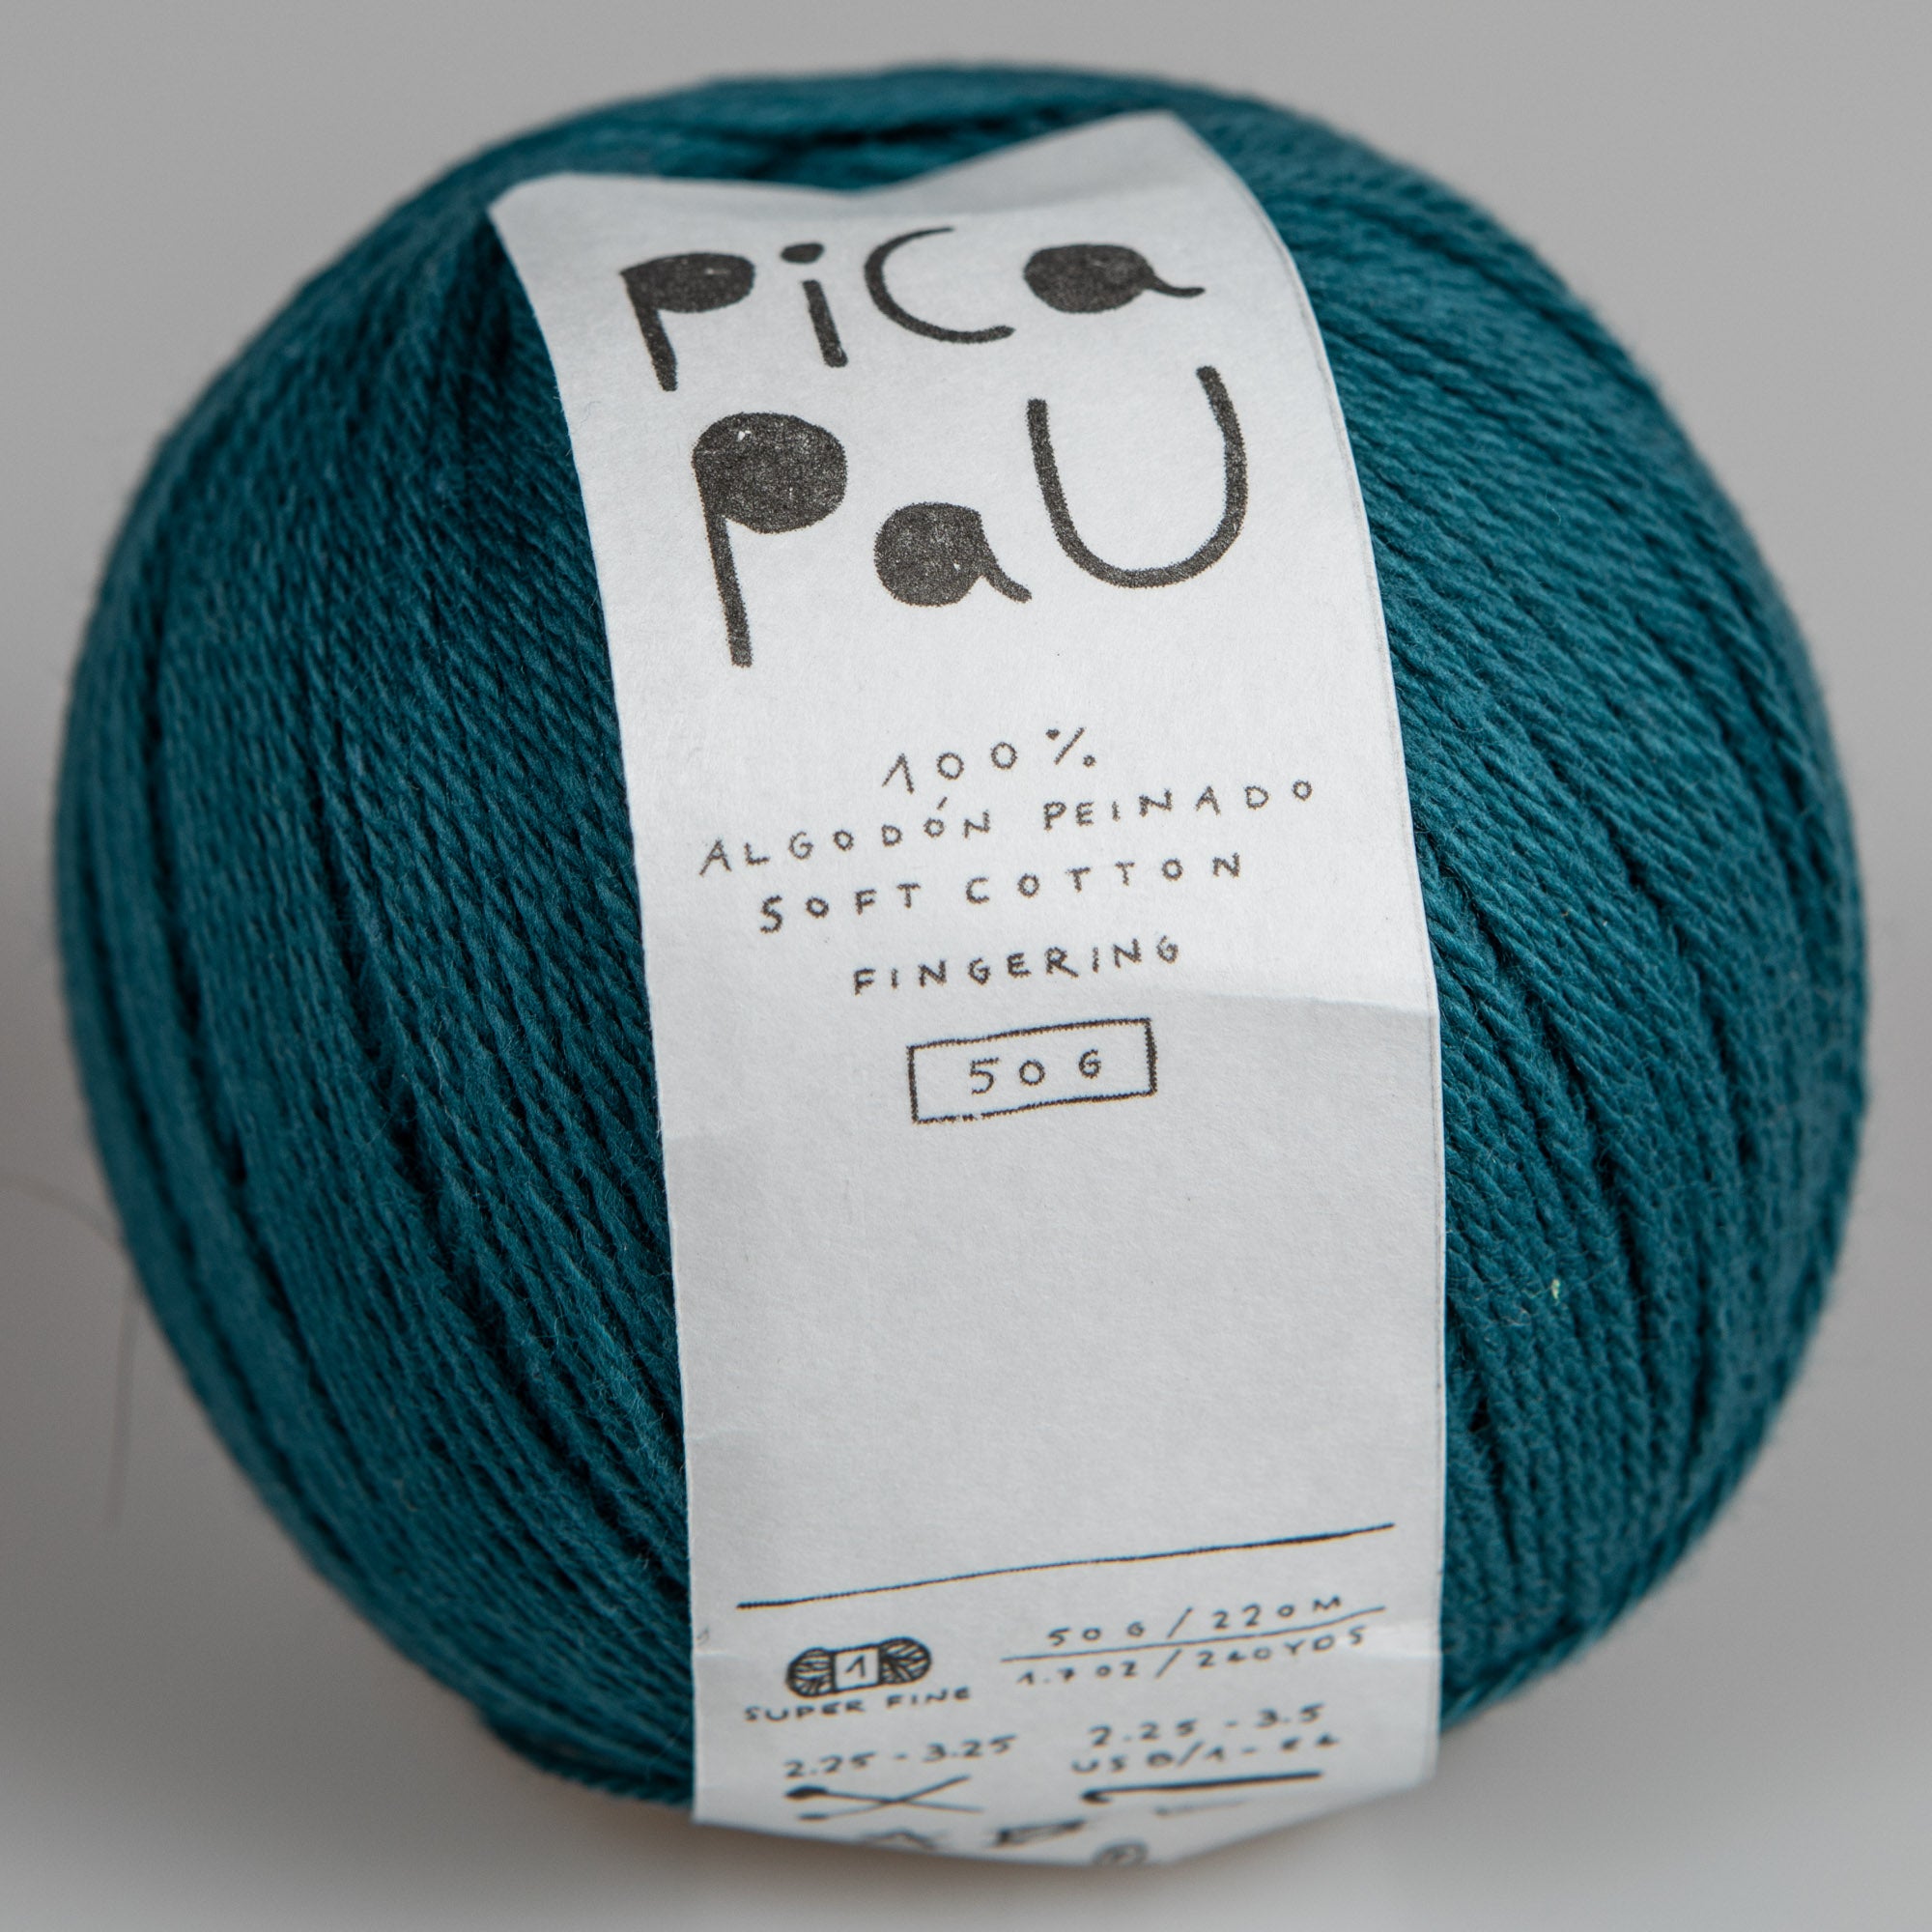 Pica Pau Cotton Yarn / 50g Fingering